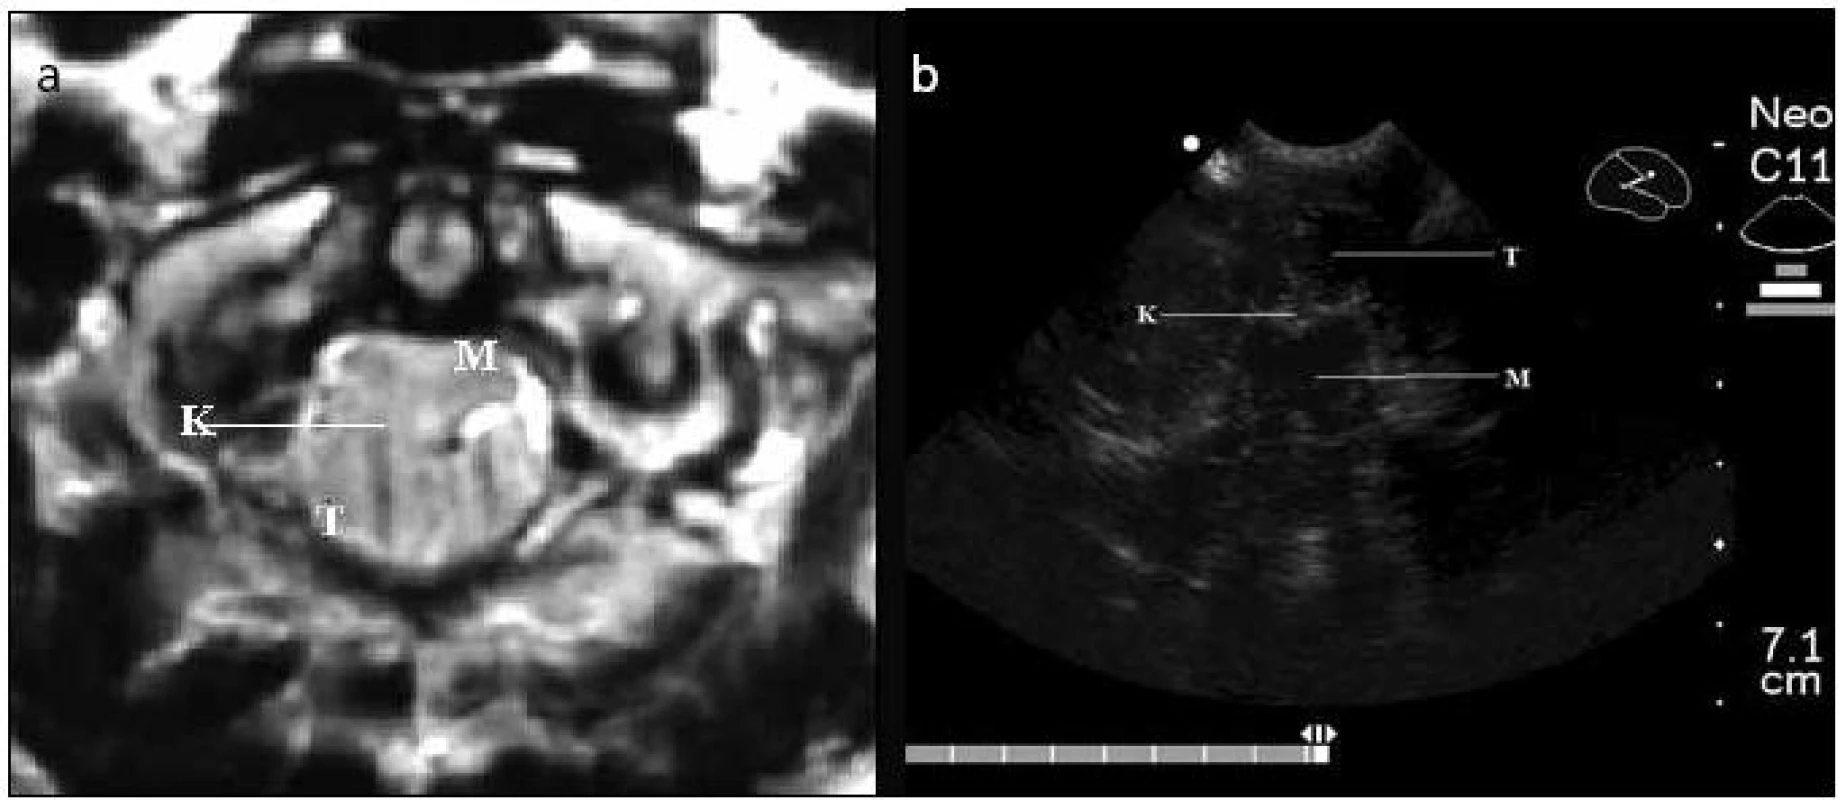 Chiariho malformace I typ A – předoperační MR T2, horizontální řez (2a) a peroperační ultrazvukové vyšetření v B obraze (2b).
T: mozečkové tonzily; M: mícha; K: místo komprese